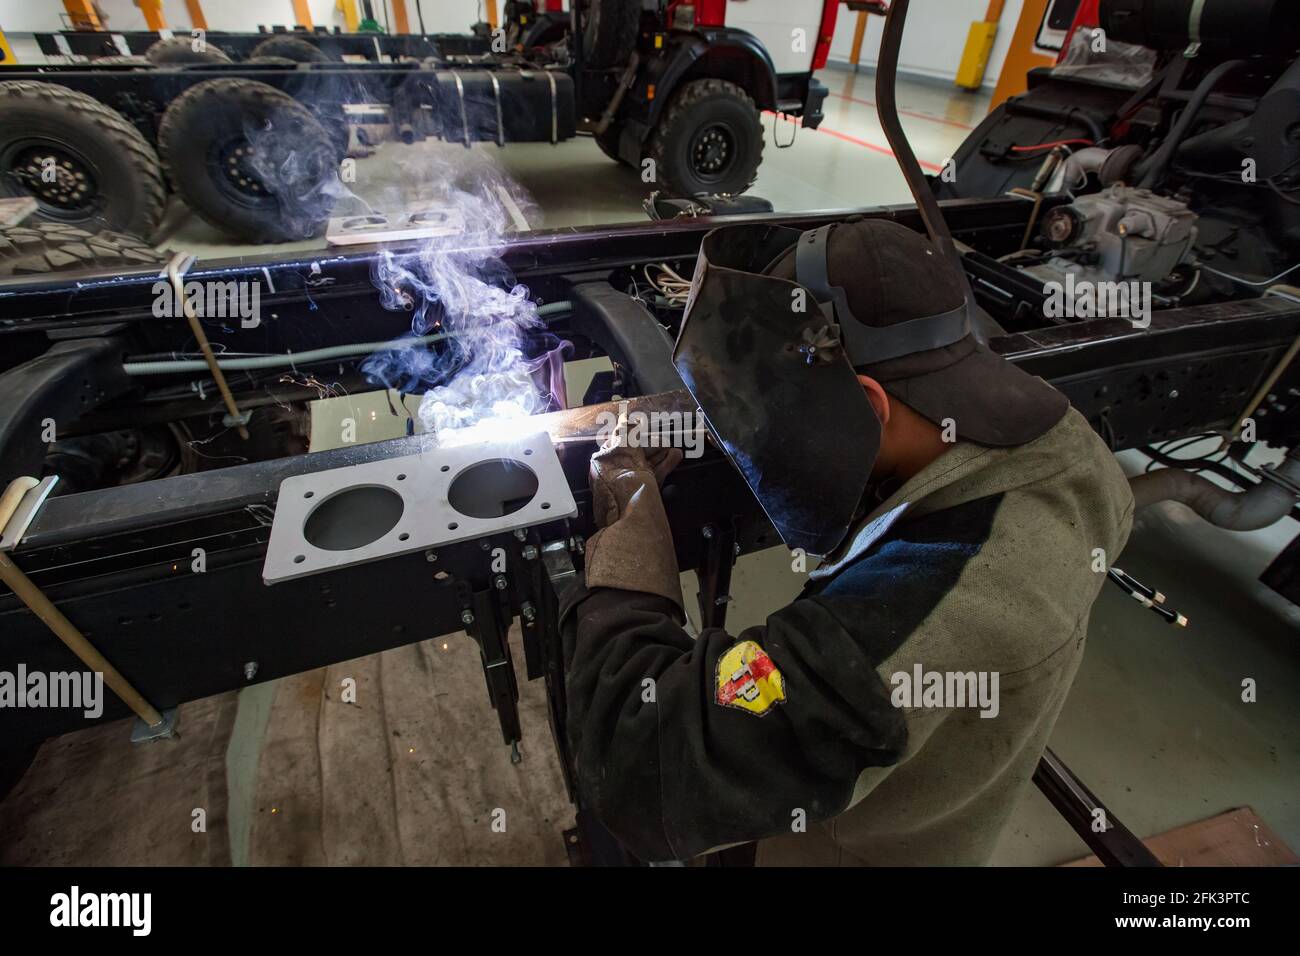 Uralsk, Kazakhstan - May 05,2012: Welder in protective mask and work suit welding metal part of vehicle. Stock Photo